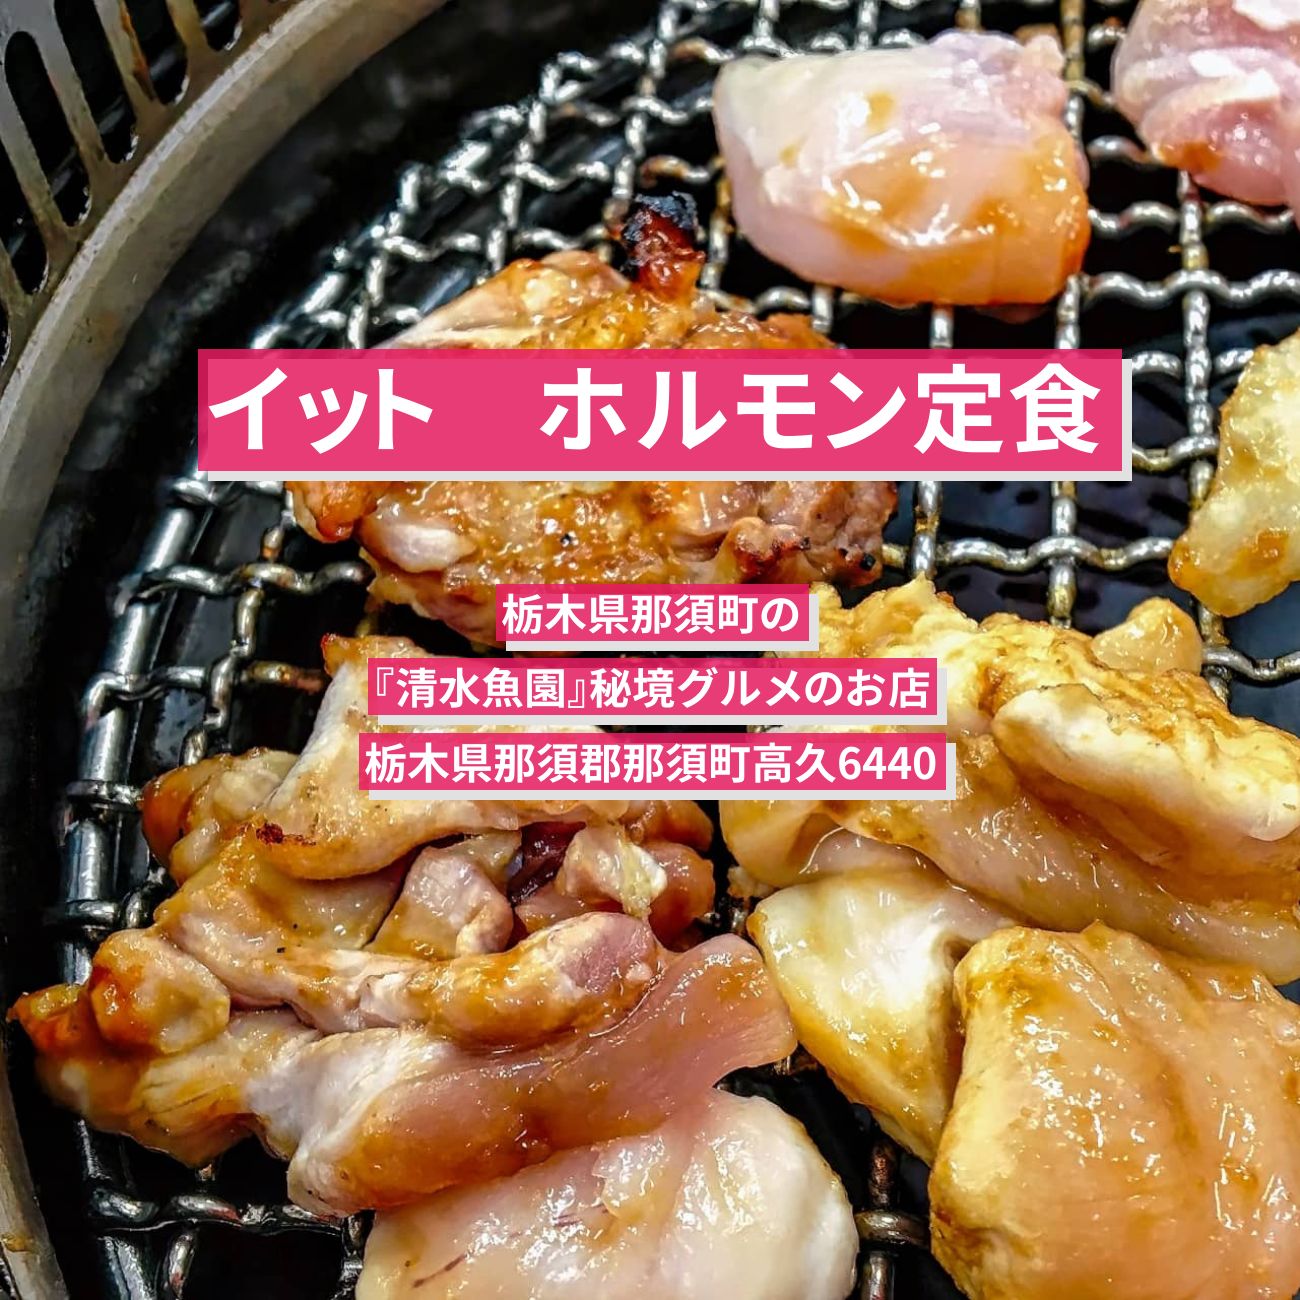 【イット】ホルモン定食『清水魚園』栃木県那須町の秘境グルメのお店